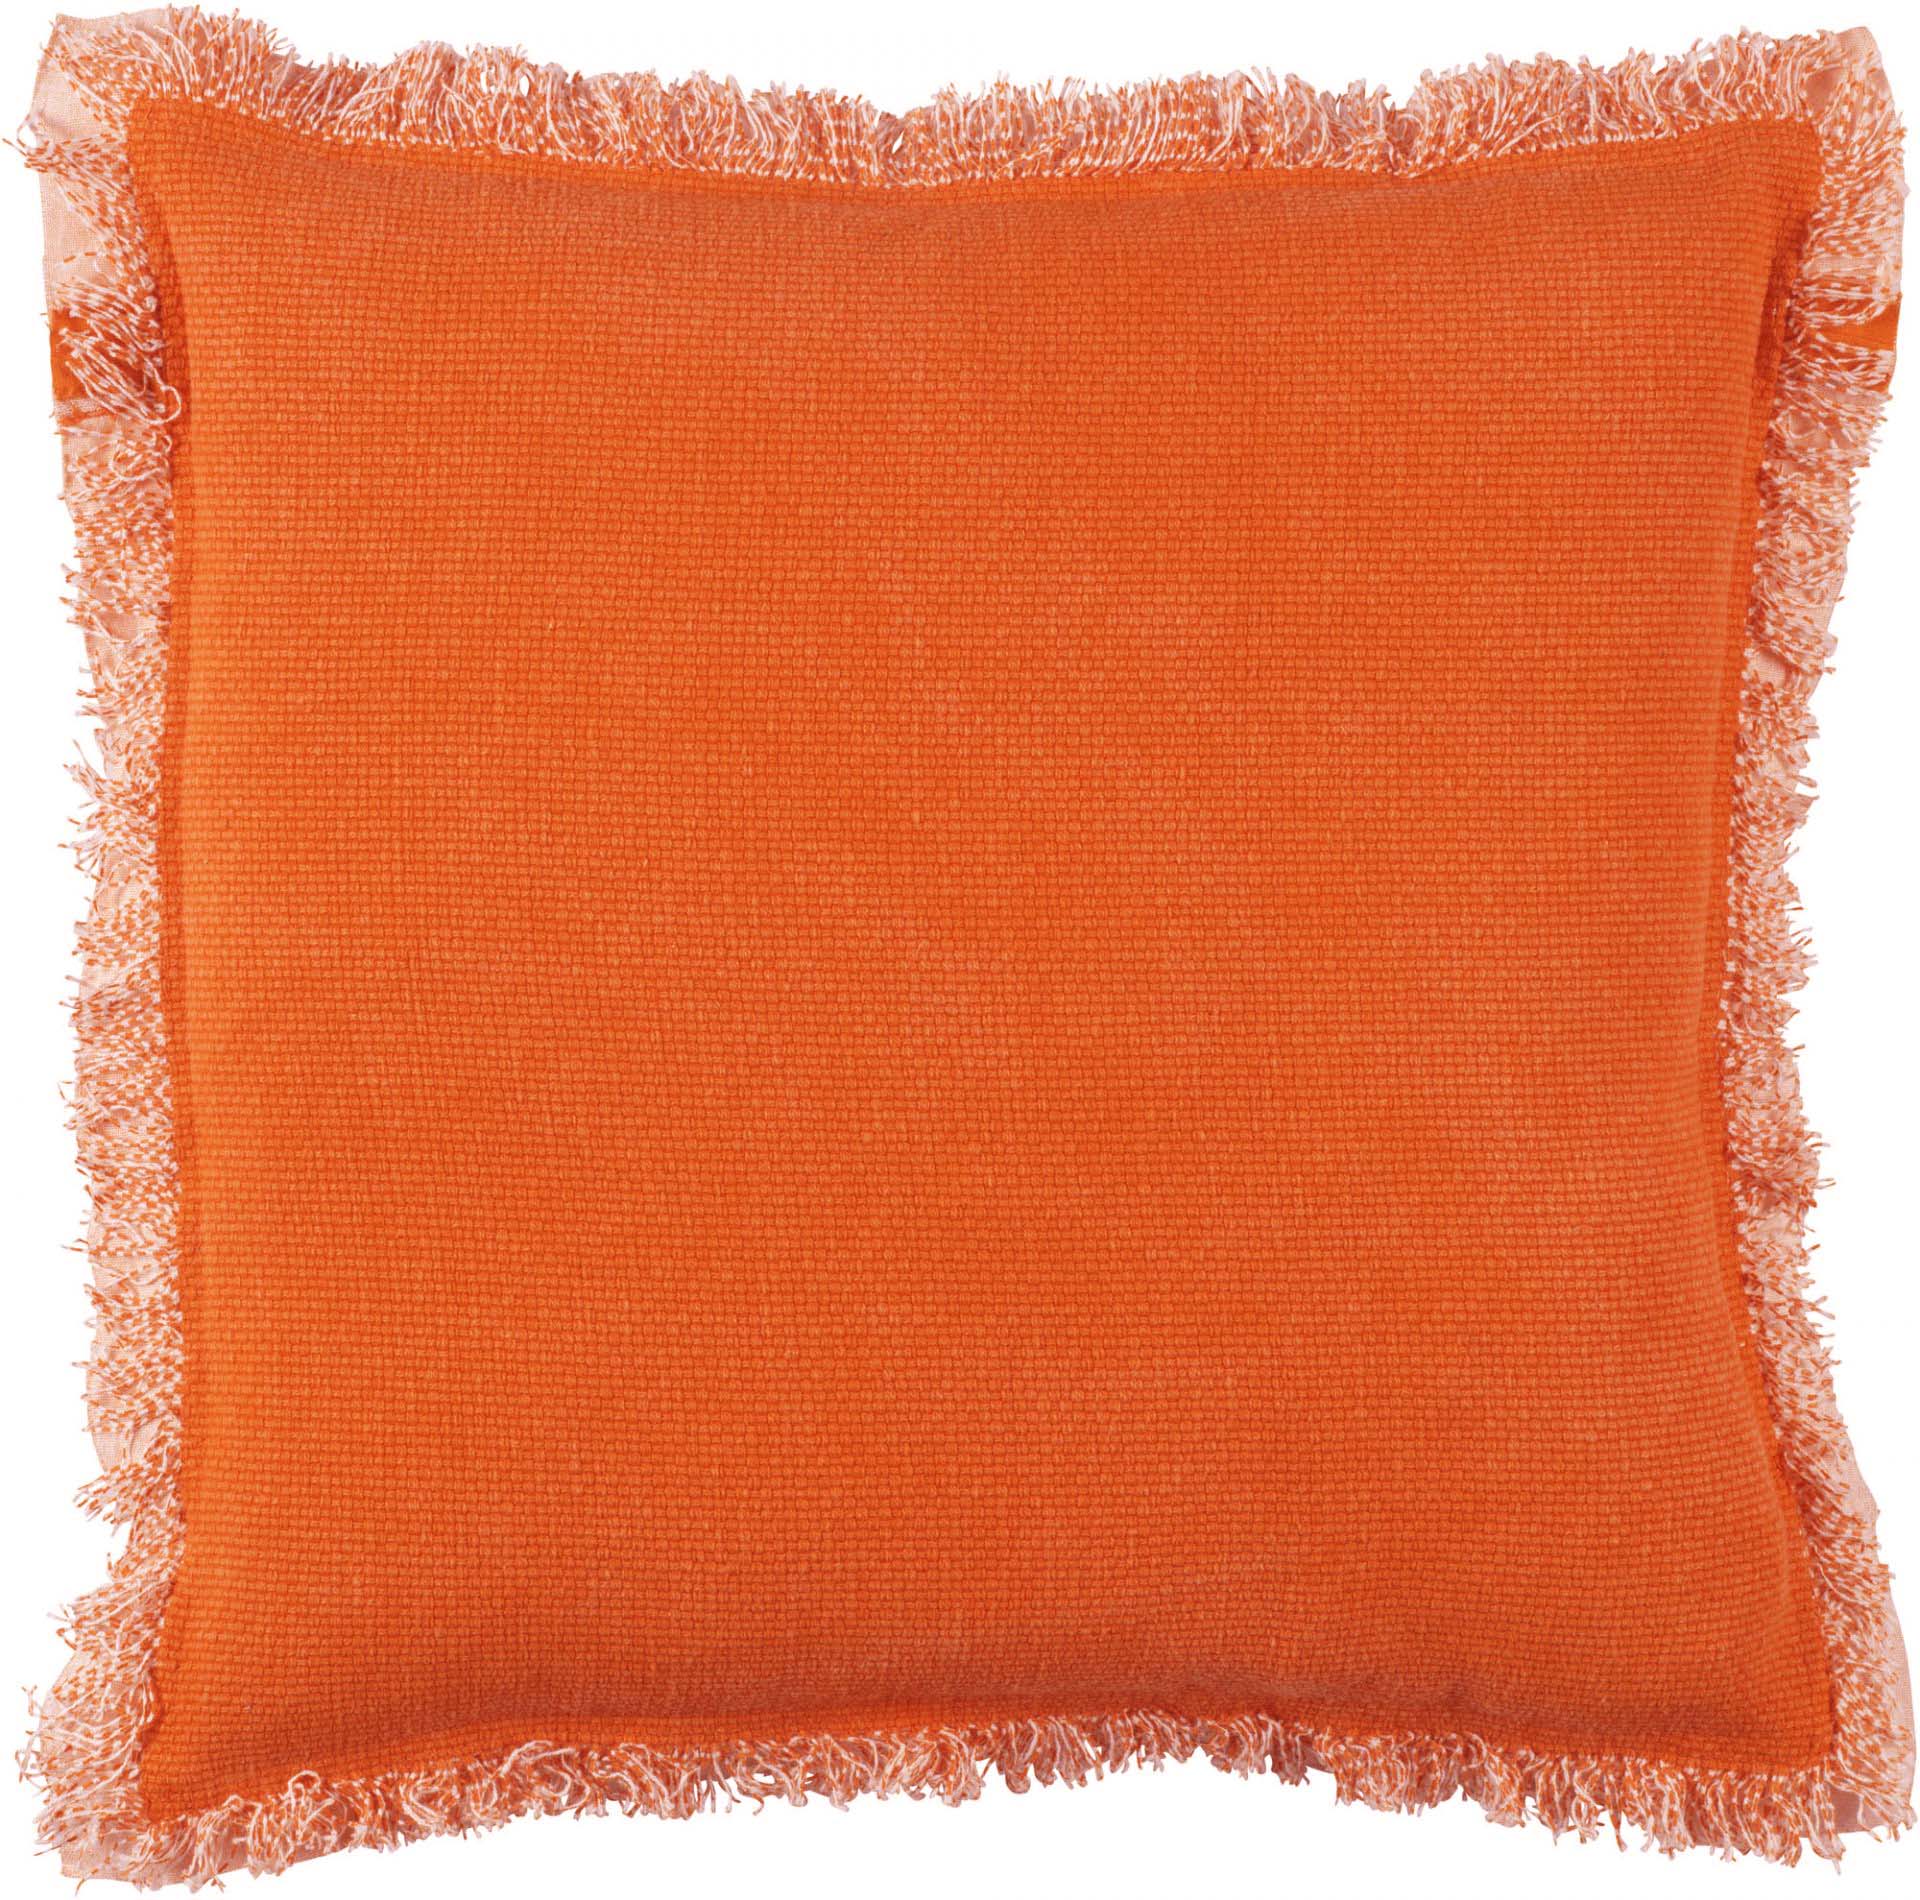 BURTO - Sierkussen van gewassen katoen oranje 70x70 cm